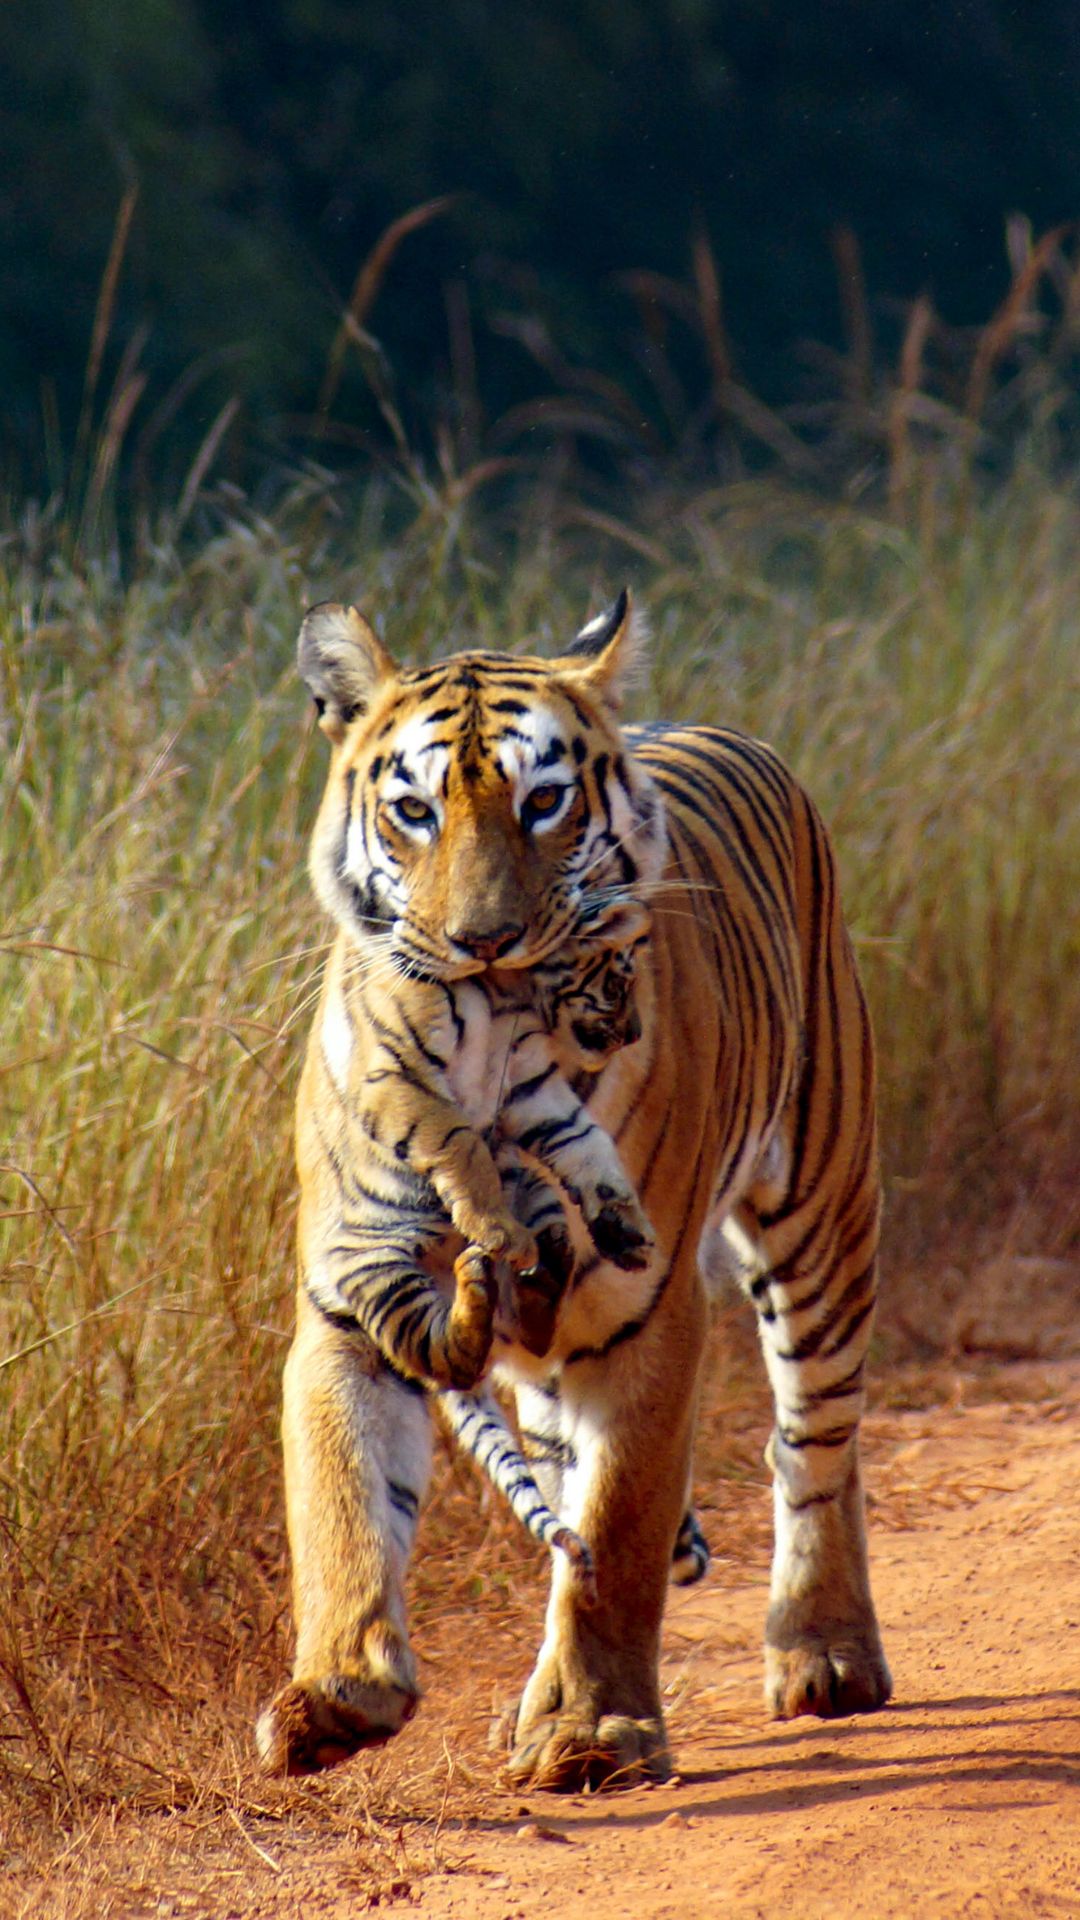 भारत के किस राज्य में सबसे ज्यादा बाघ पाए जाते हैं?